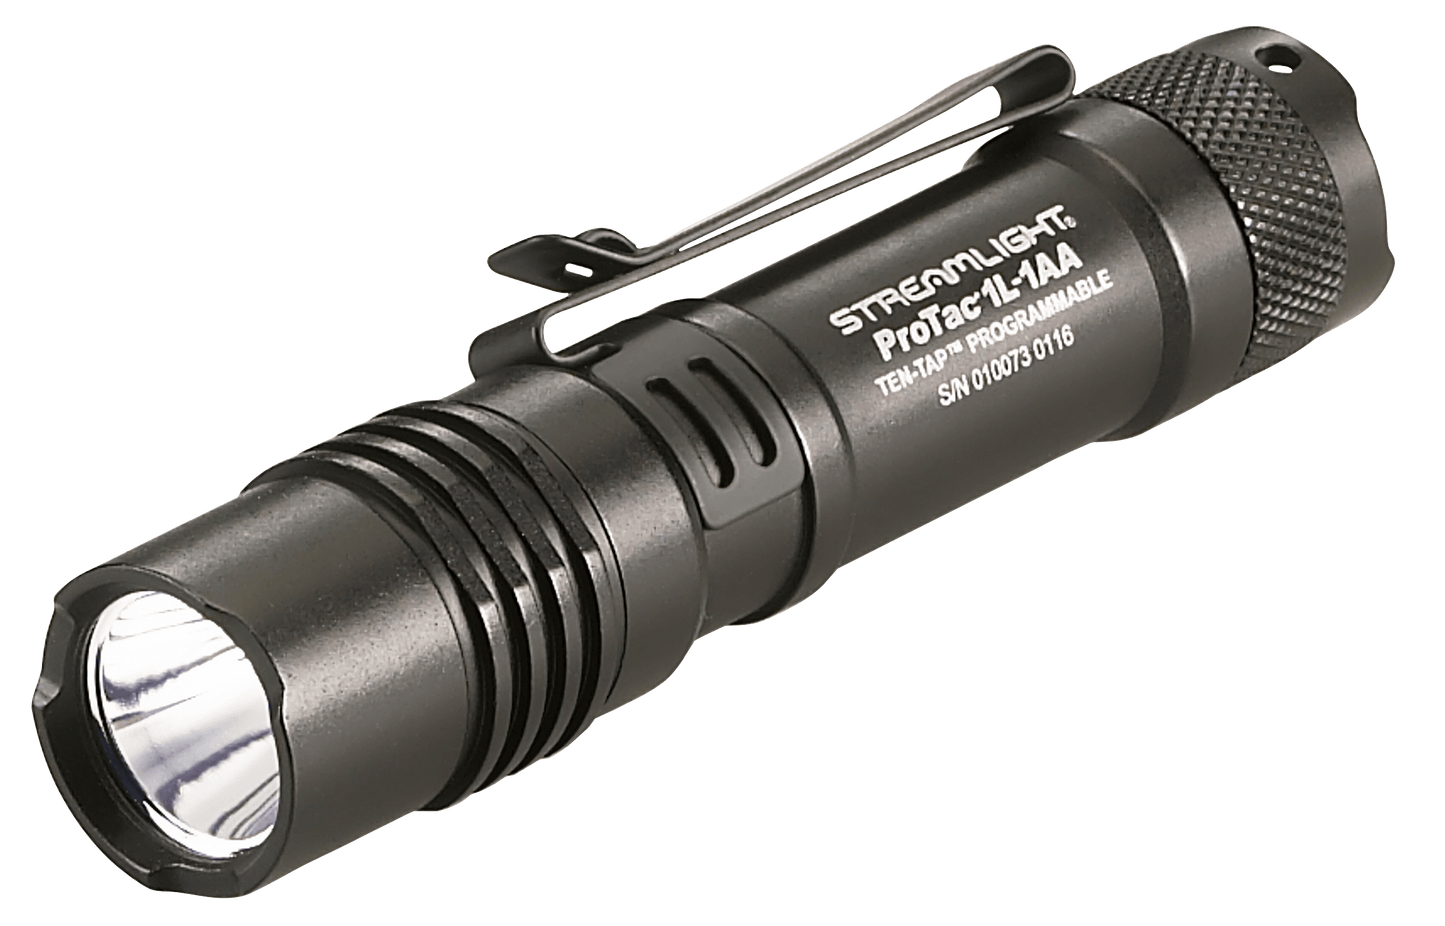 Streamlight Protac 1l-1aa Flashlight Black 350 Lumens by Texas Fowlers